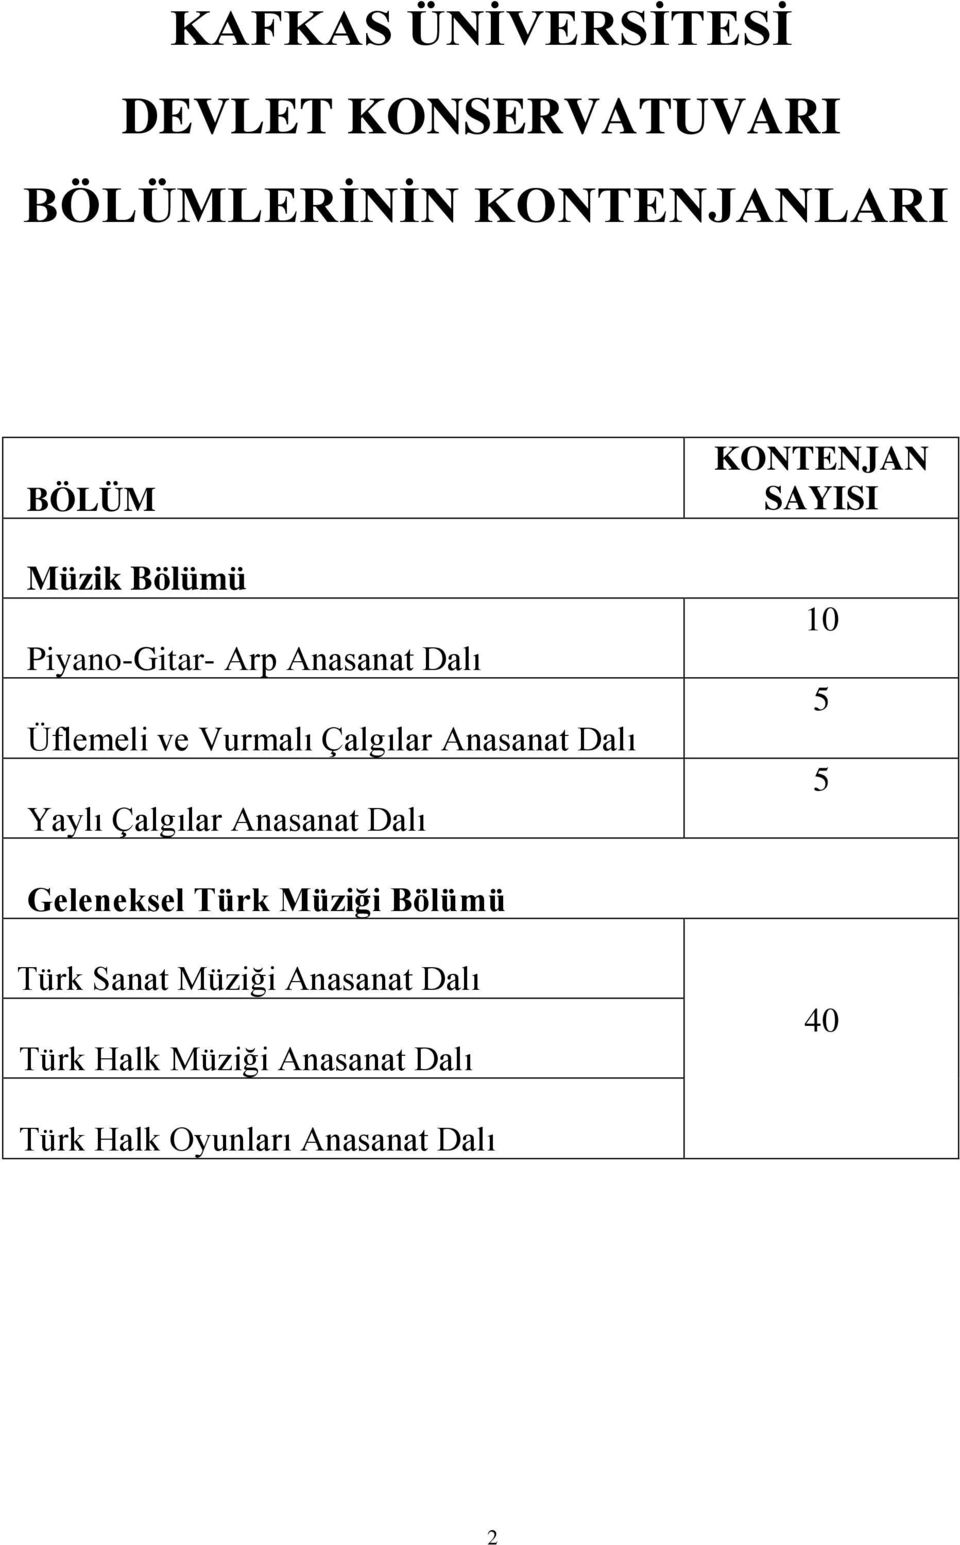 Yaylı Çalgılar Anasanat Dalı KONTENJAN SAYISI 10 5 5 Geleneksel Türk Müziği Bölümü